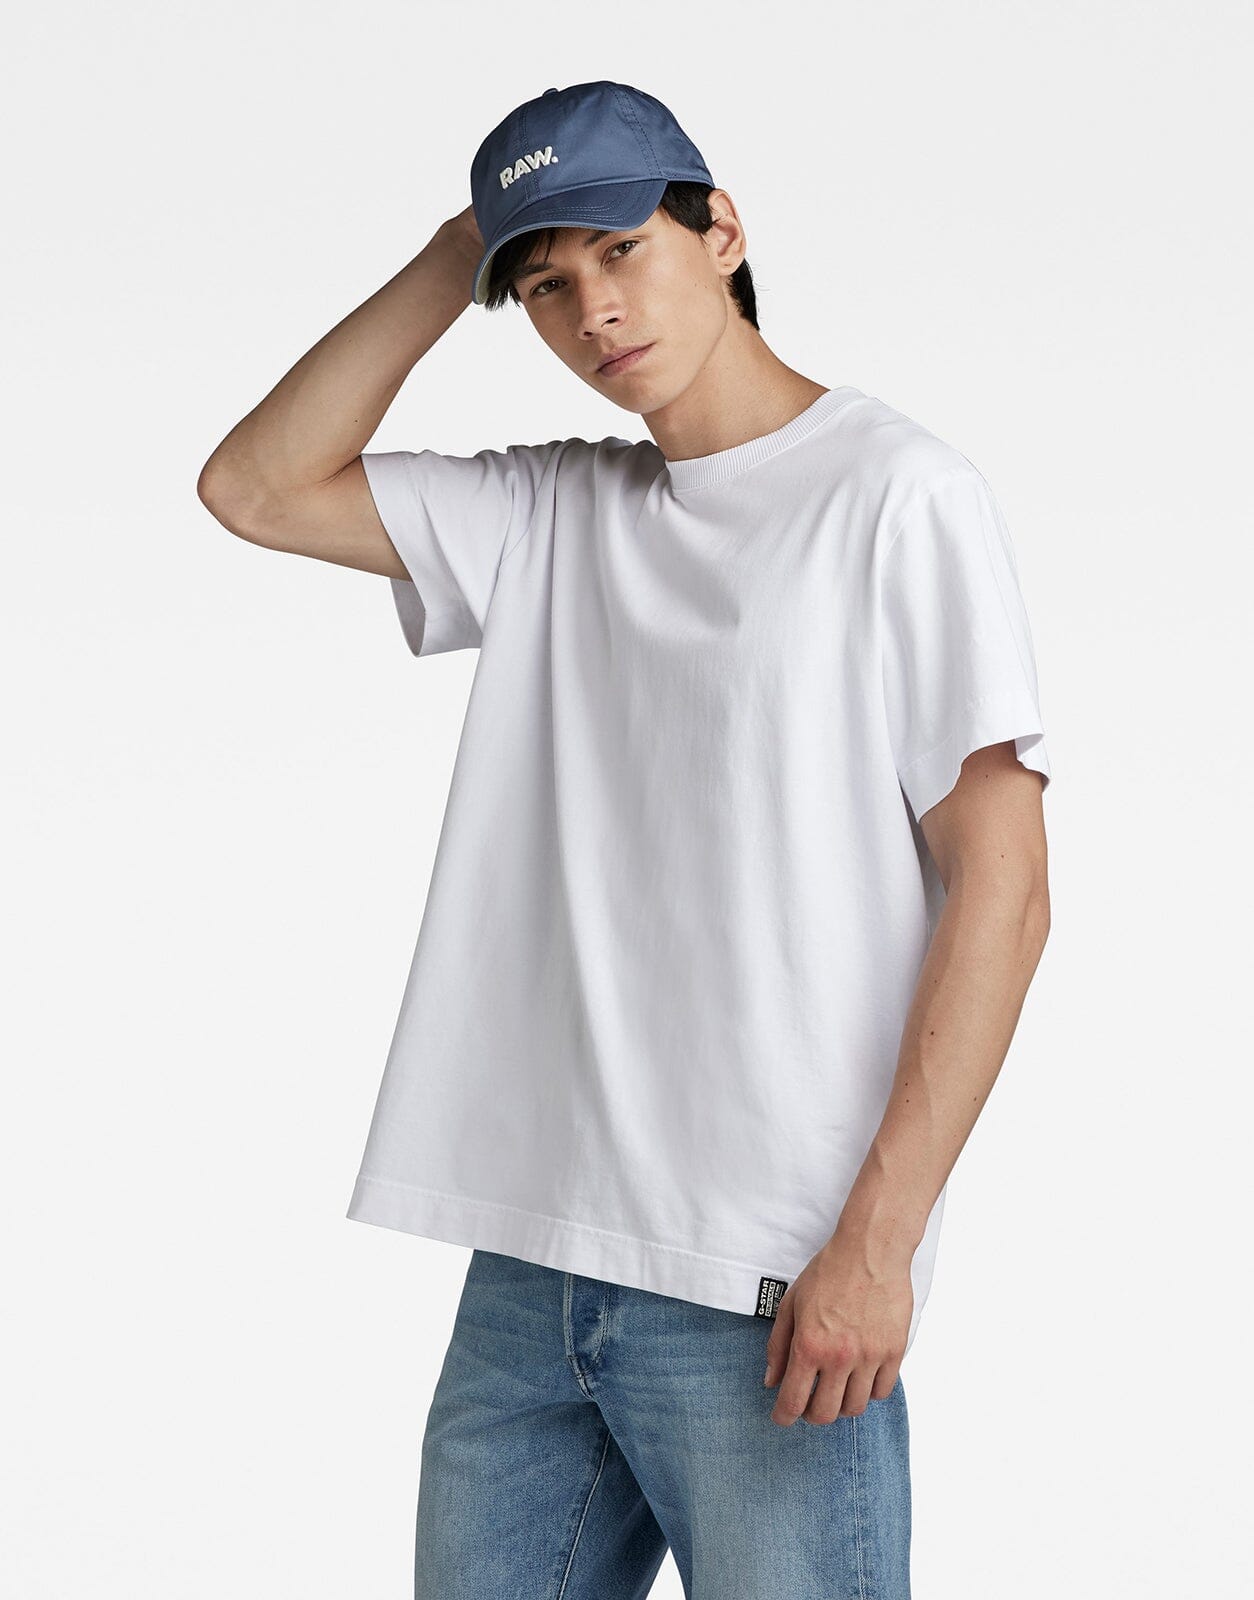 G-Star RAW Essential Loose T-Shirt - Subwear